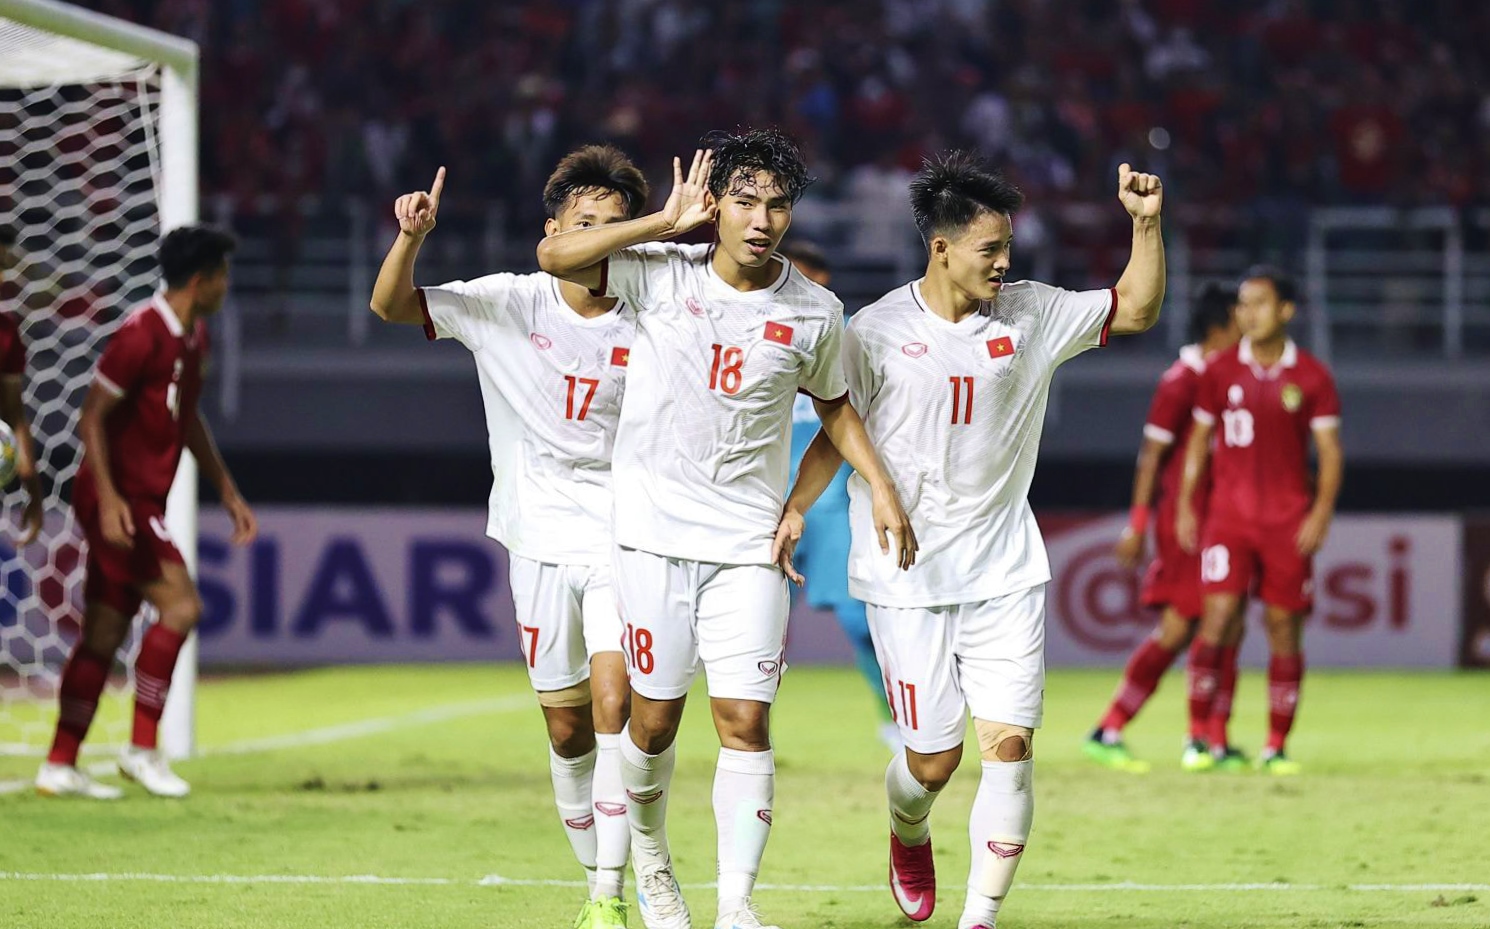  Đội tuyển U20 Việt Nam là một trong 5 đội nhì bảng có thành tích tốt giành suất tham dự vòng chung kết U20 châu Á 2023. Ảnh: VFF